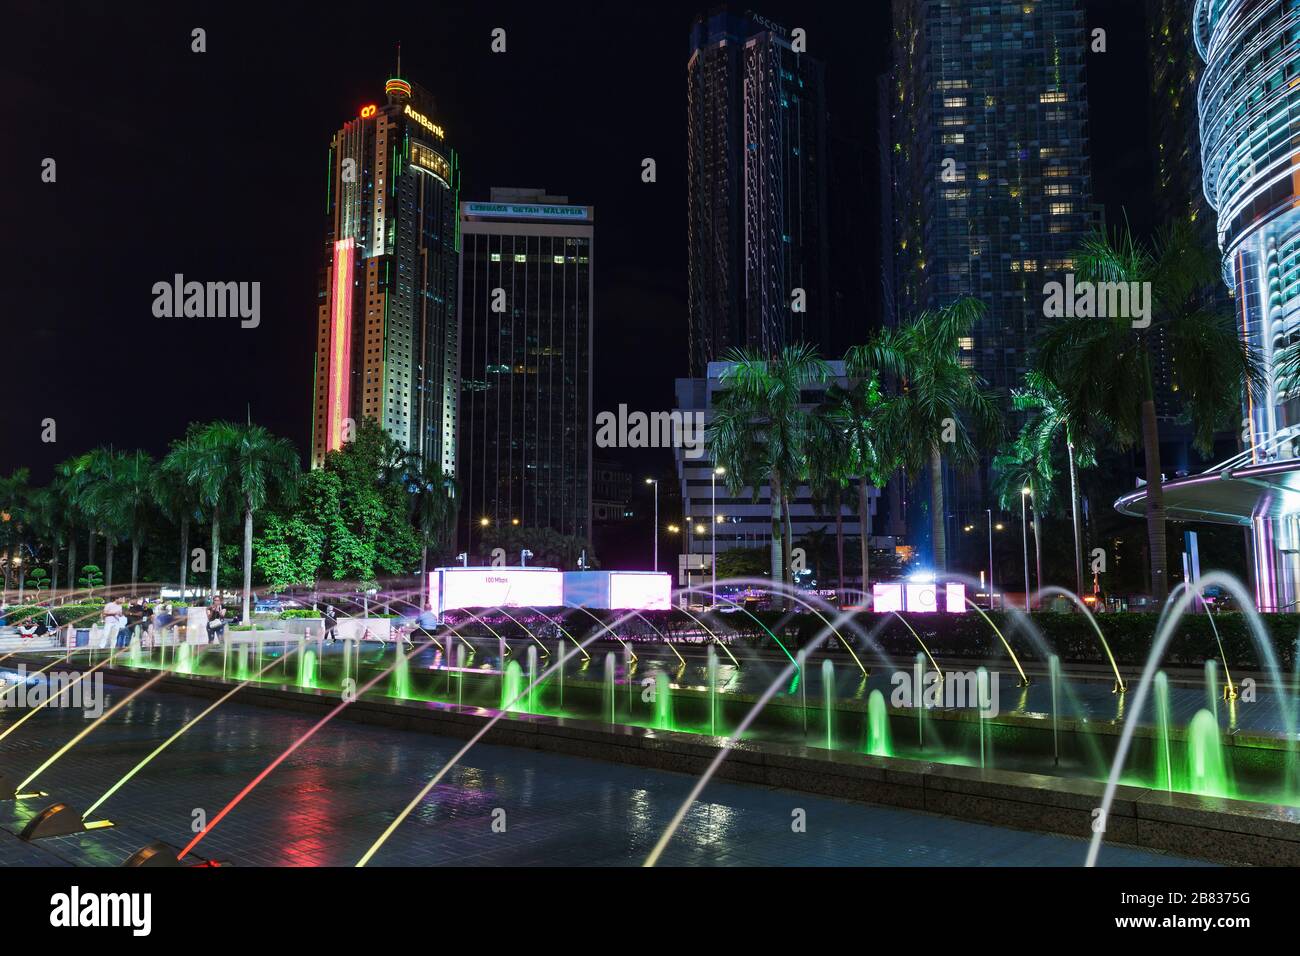 Kuala Lumpur, Malaisie - 28 novembre 2019 : fontaine illuminée la nuit près des tours jumelles Petronas Banque D'Images